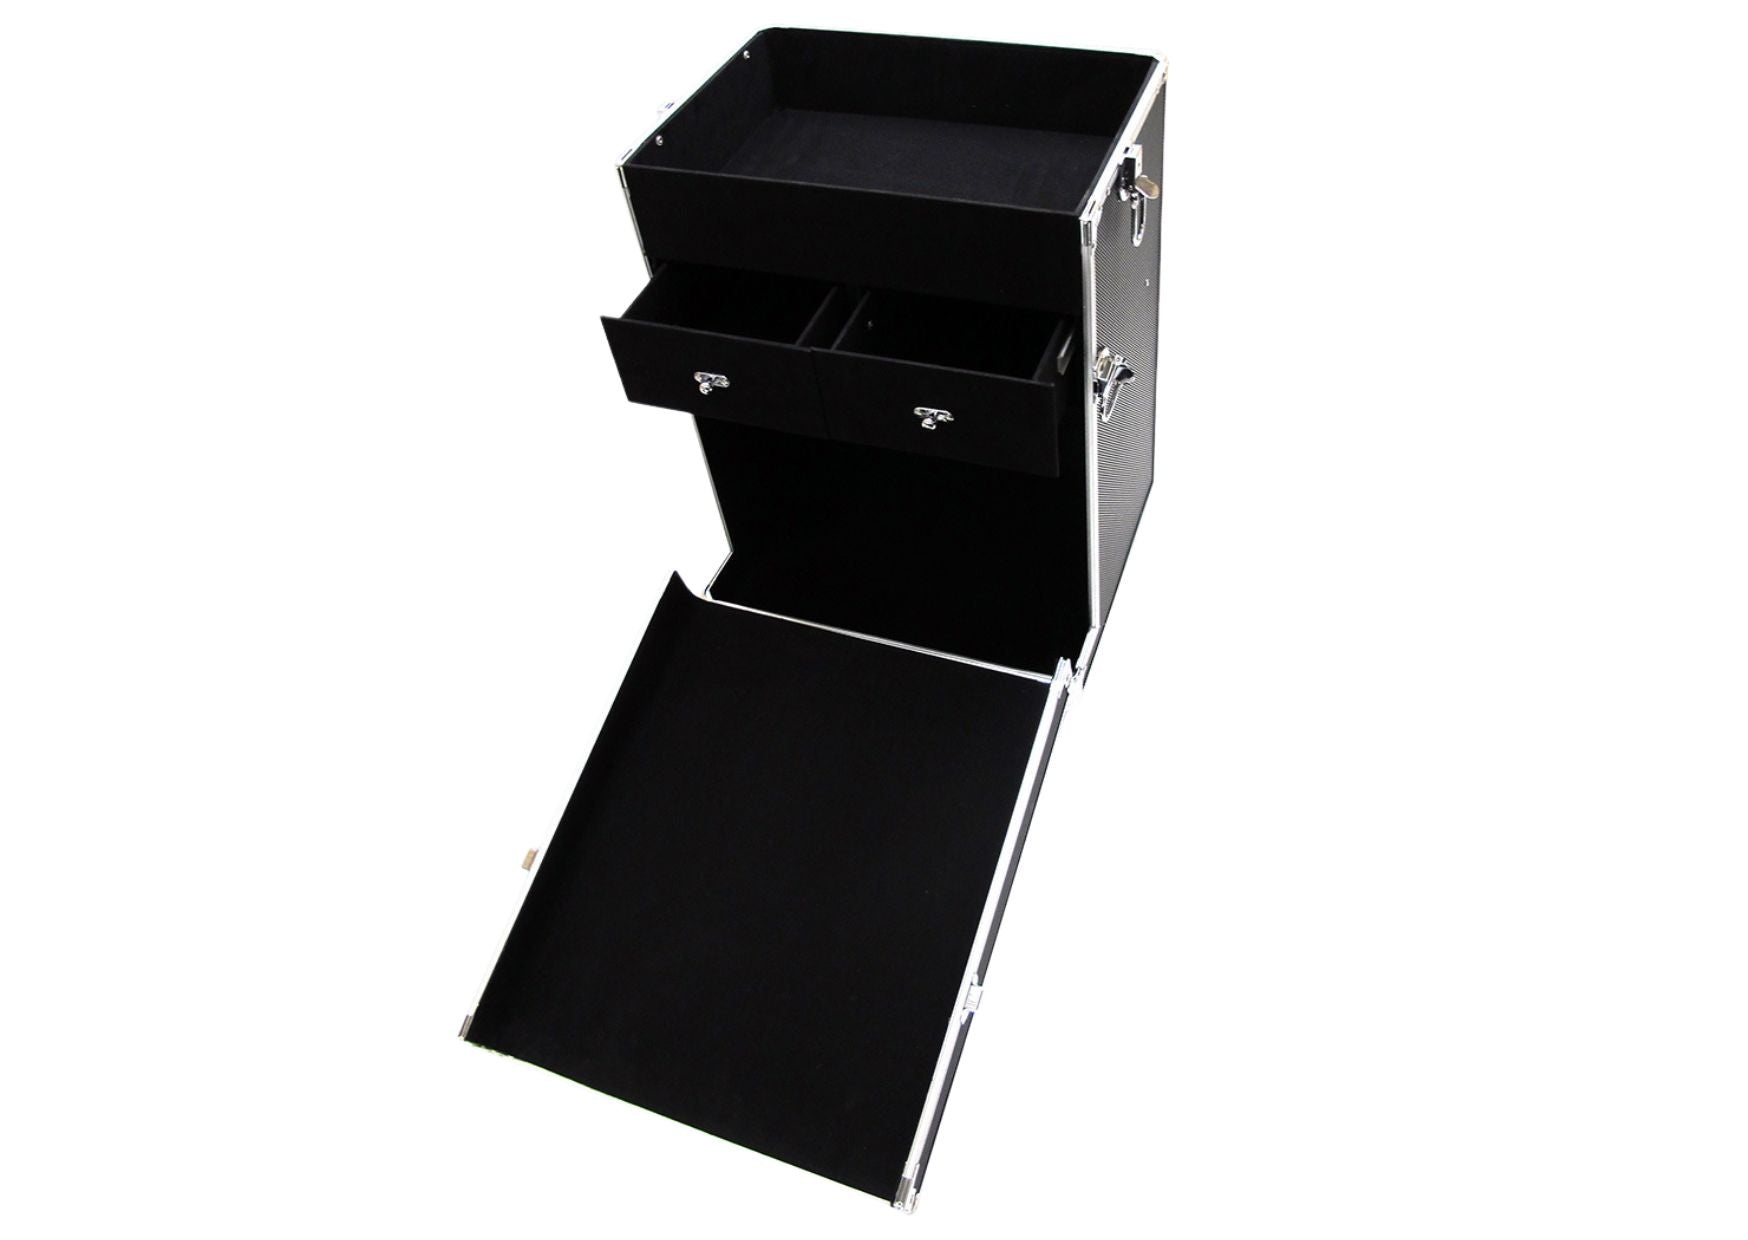 Koffertrolley in schwarz, Abmessungen 340 x 370 x 740 mm